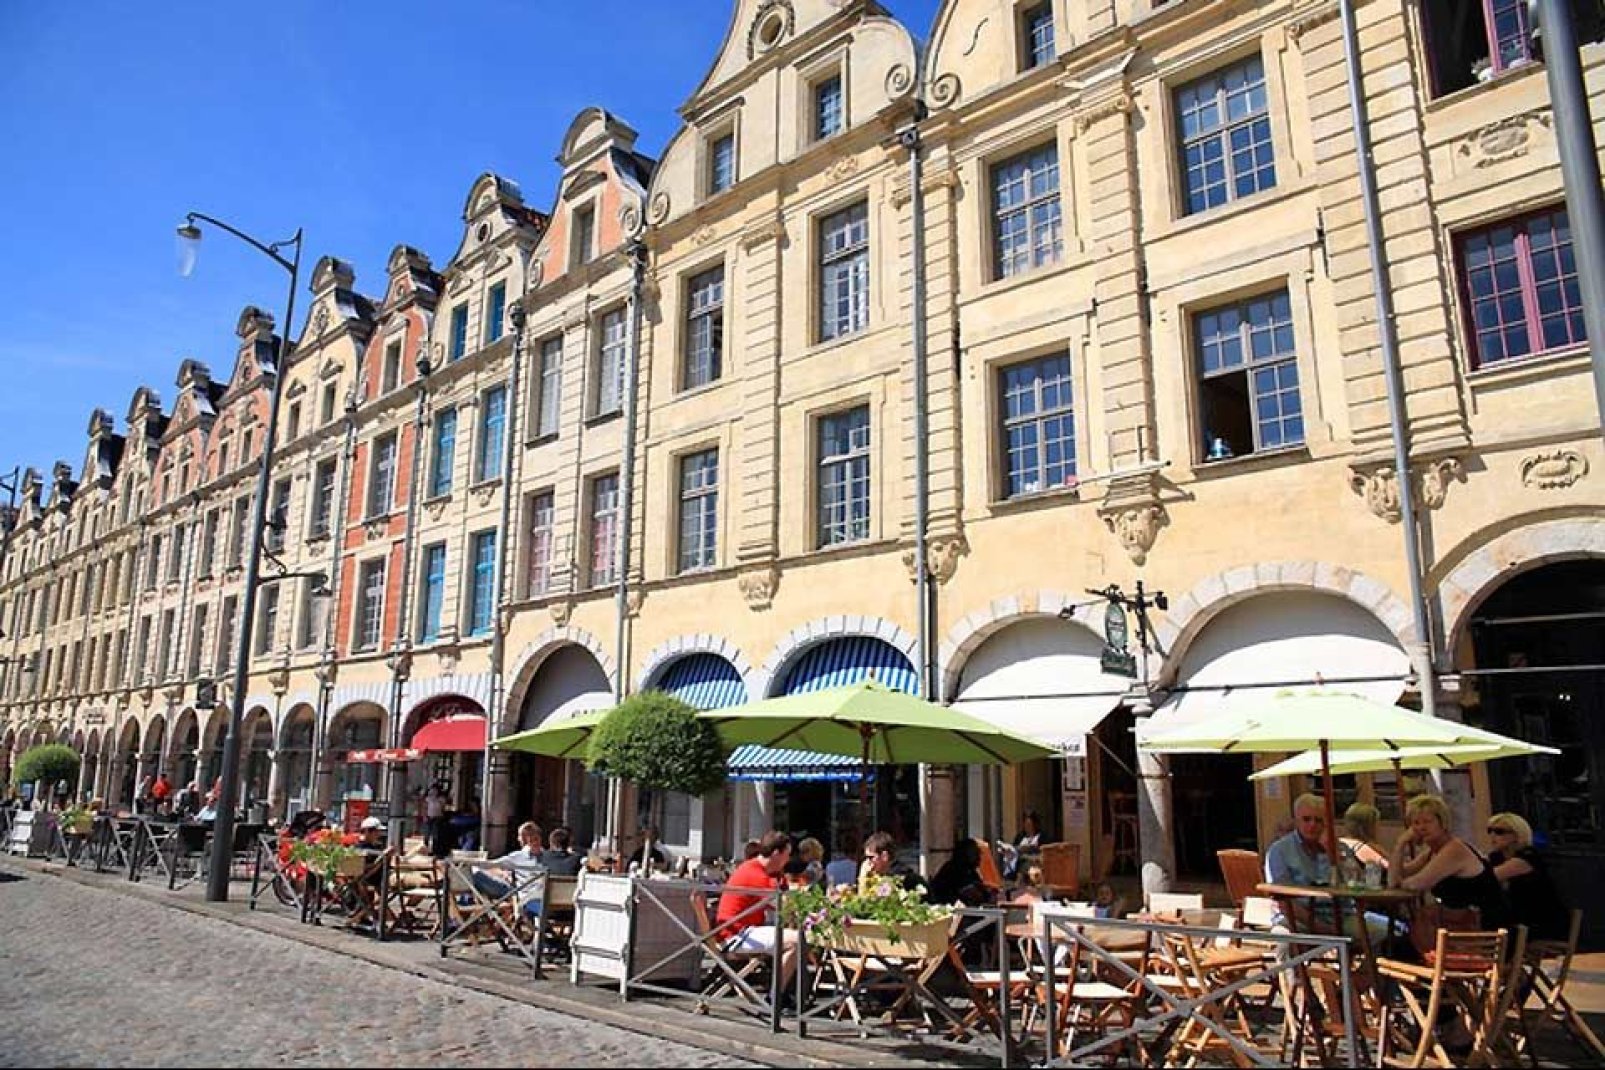 Arras ist eine Gemeinde im französischen Departement Nord-Pas-de-Calais mit ungef. 45.000 Einwohnern.